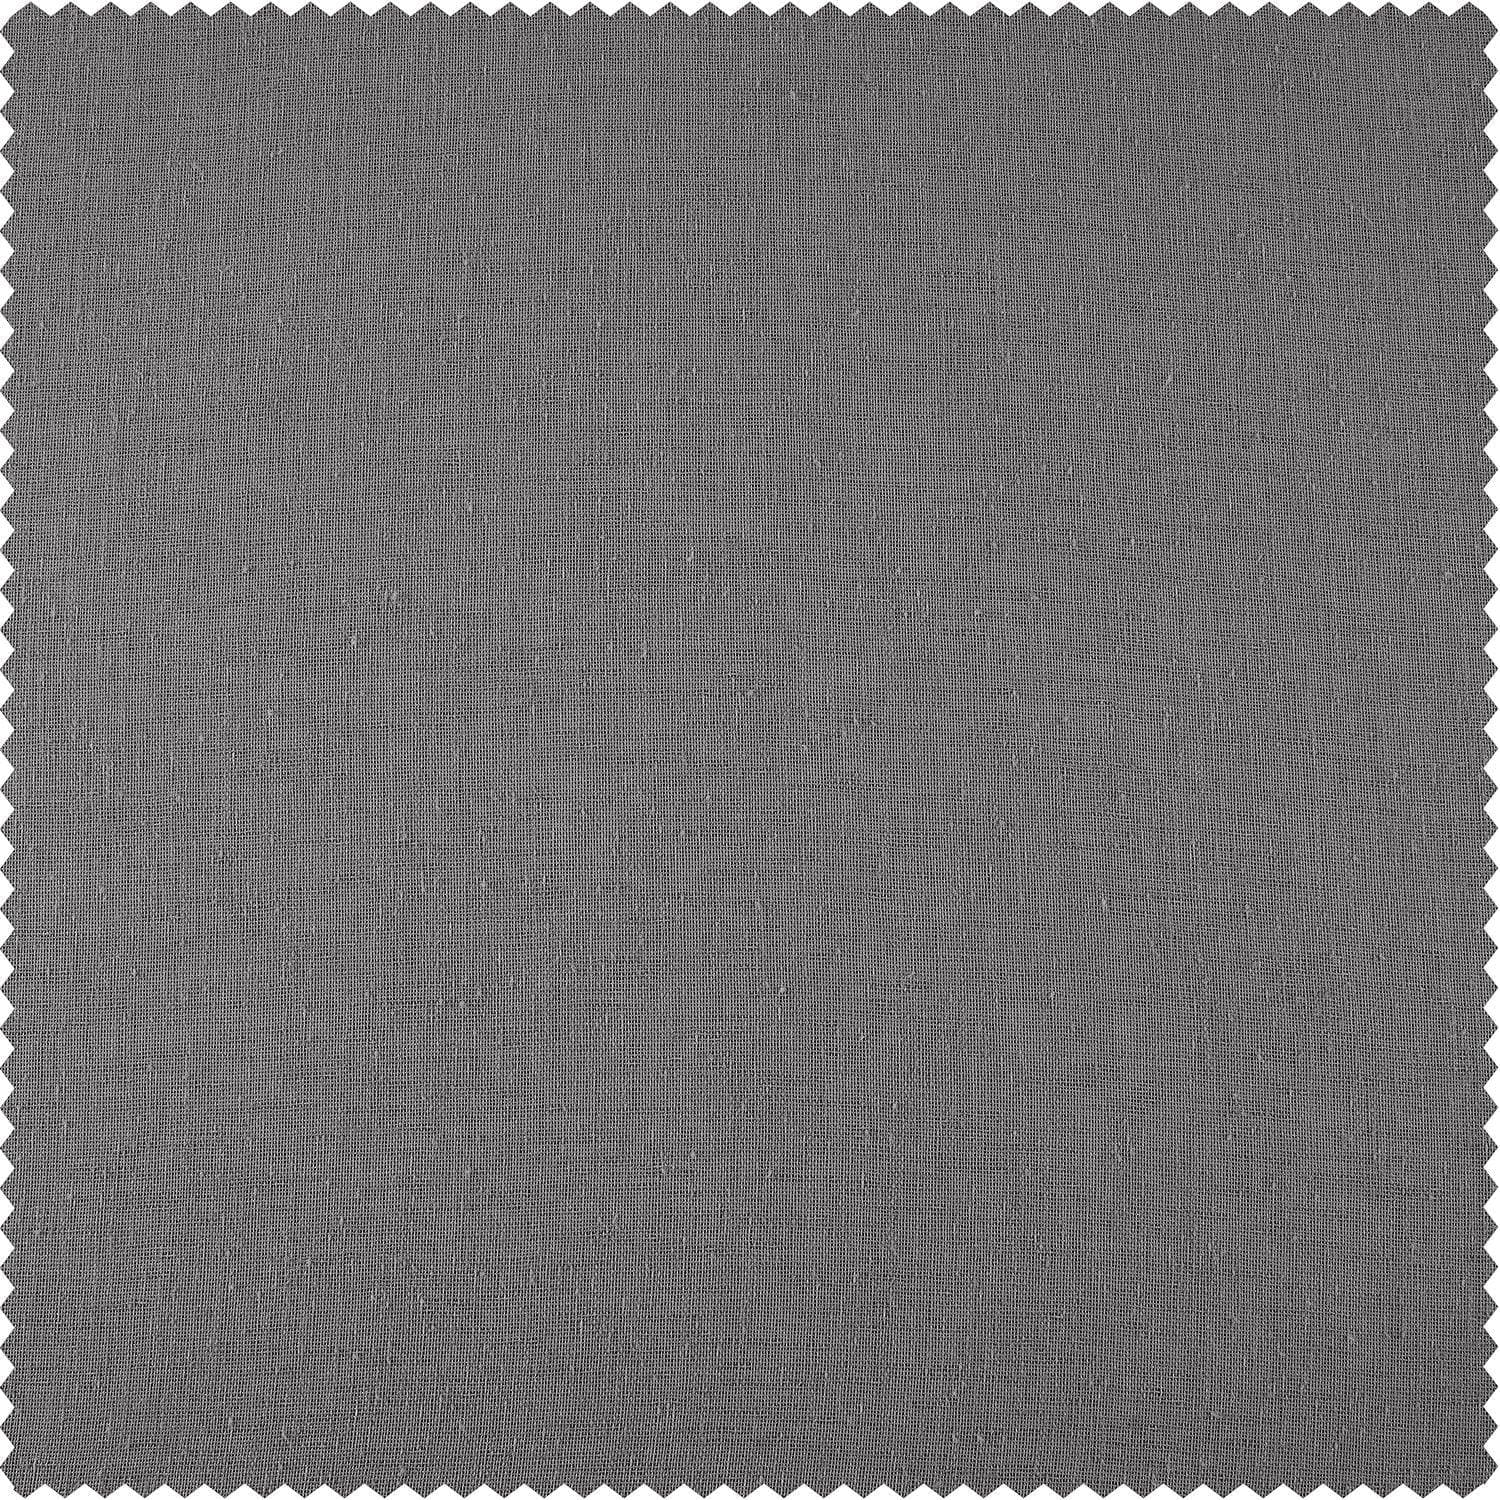 Nimbo Grey Linen Sheer Curtain Pair (2 Panels)